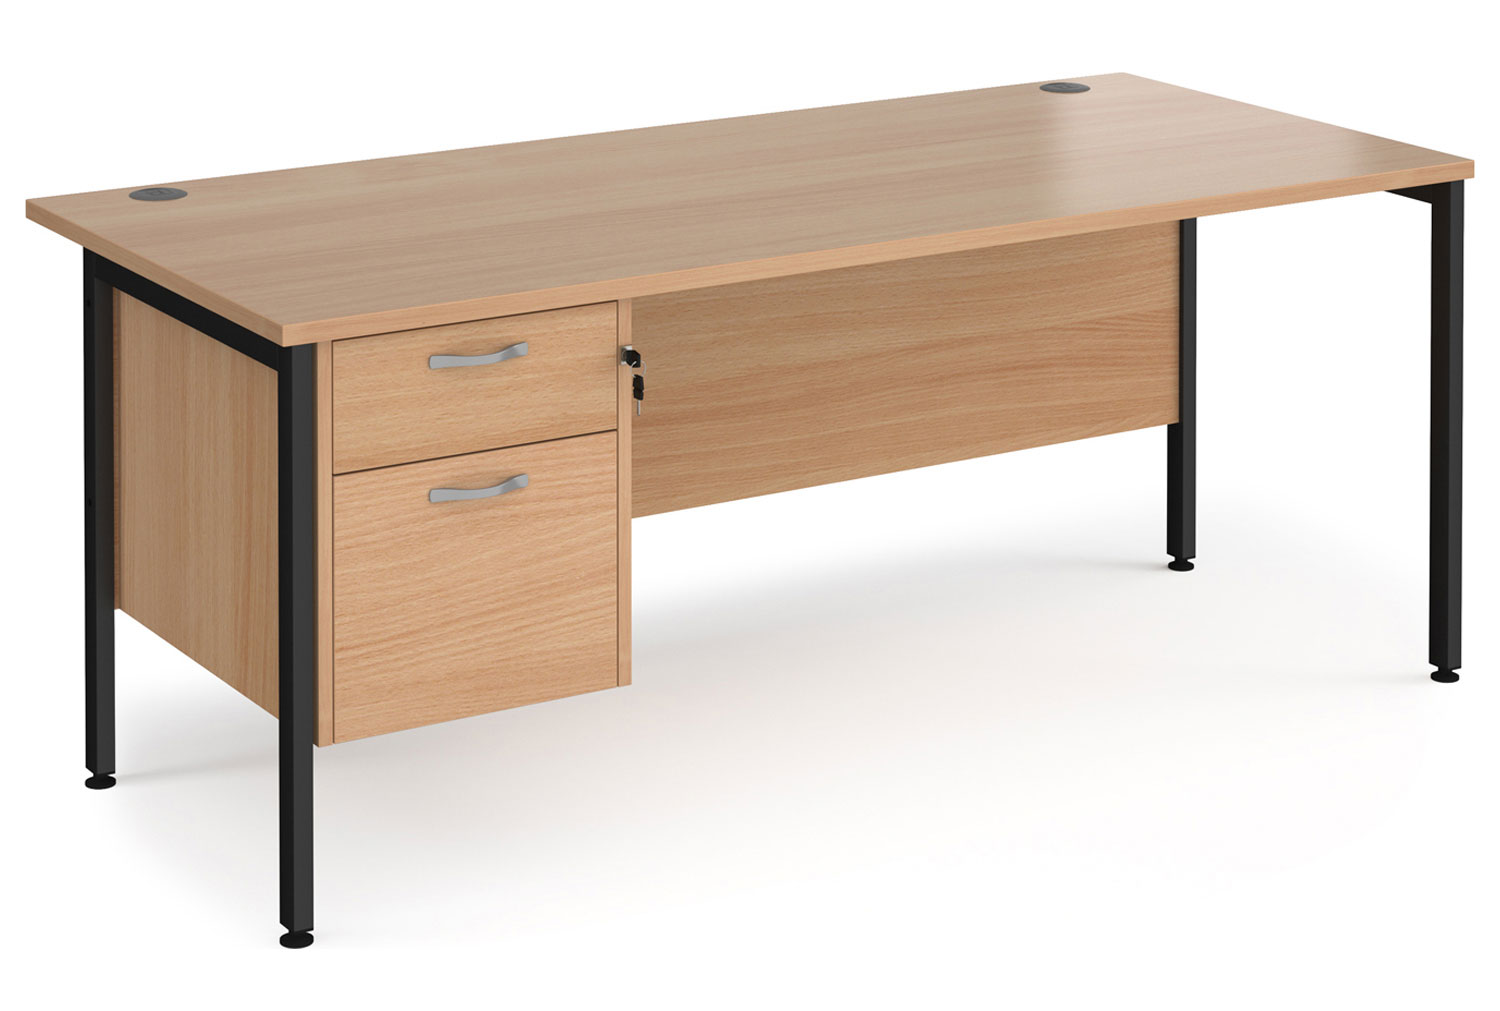 Value Line Deluxe H-Leg Rectangular Office Desk 2 Drawers (Black Legs), 180wx80dx73h (cm), Beech